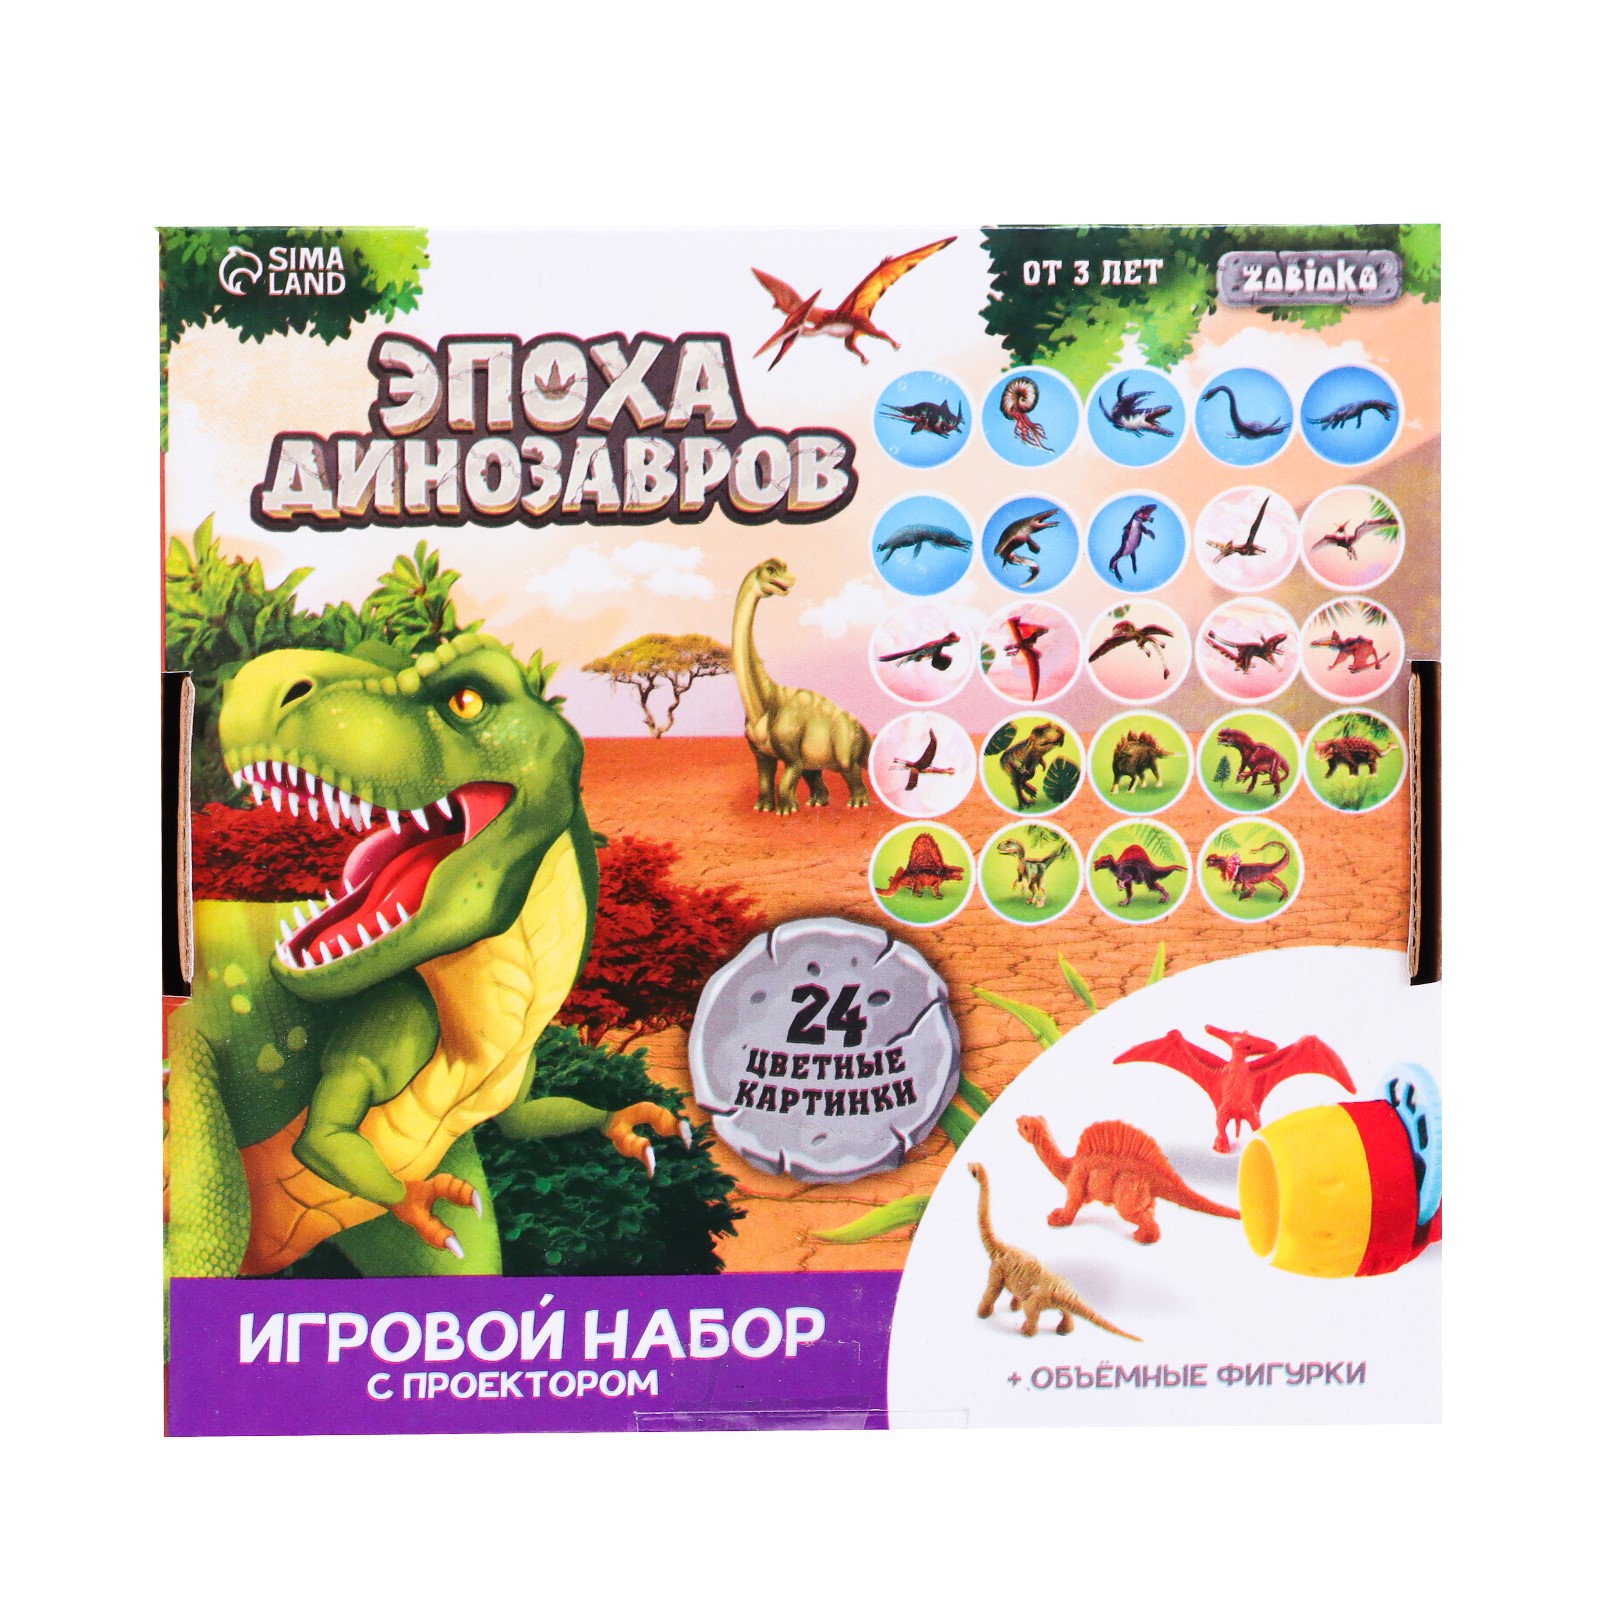 Игровой набор Sima-Land с проектором и фигурками «Эпоха динозавров» - фото 8